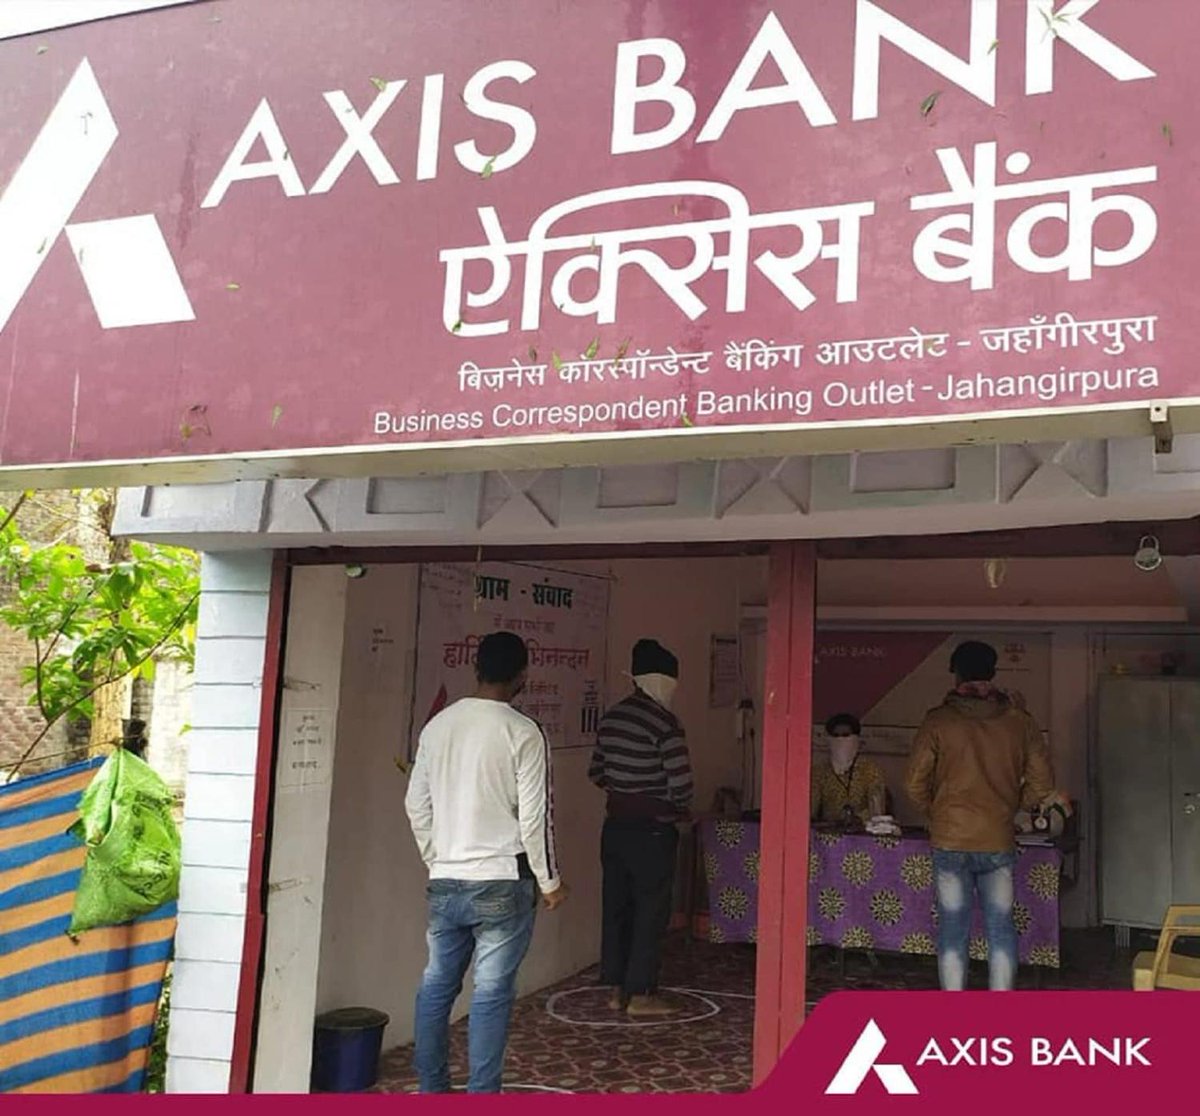 Axis Bank Q4 Results 2024: घाटे के बाद बैंक का नेट मुनाफा बढ़कर 7,129 करोड़ रुपये पर पहुंचा, NII में भी इजाफा

#AxisBank #Q4Results #Q4FY24Results #FY24Results #CitiBank #BusinessNews #marketnews #businessstandardhindi hindi.business-standard.com/markets/axis-b…